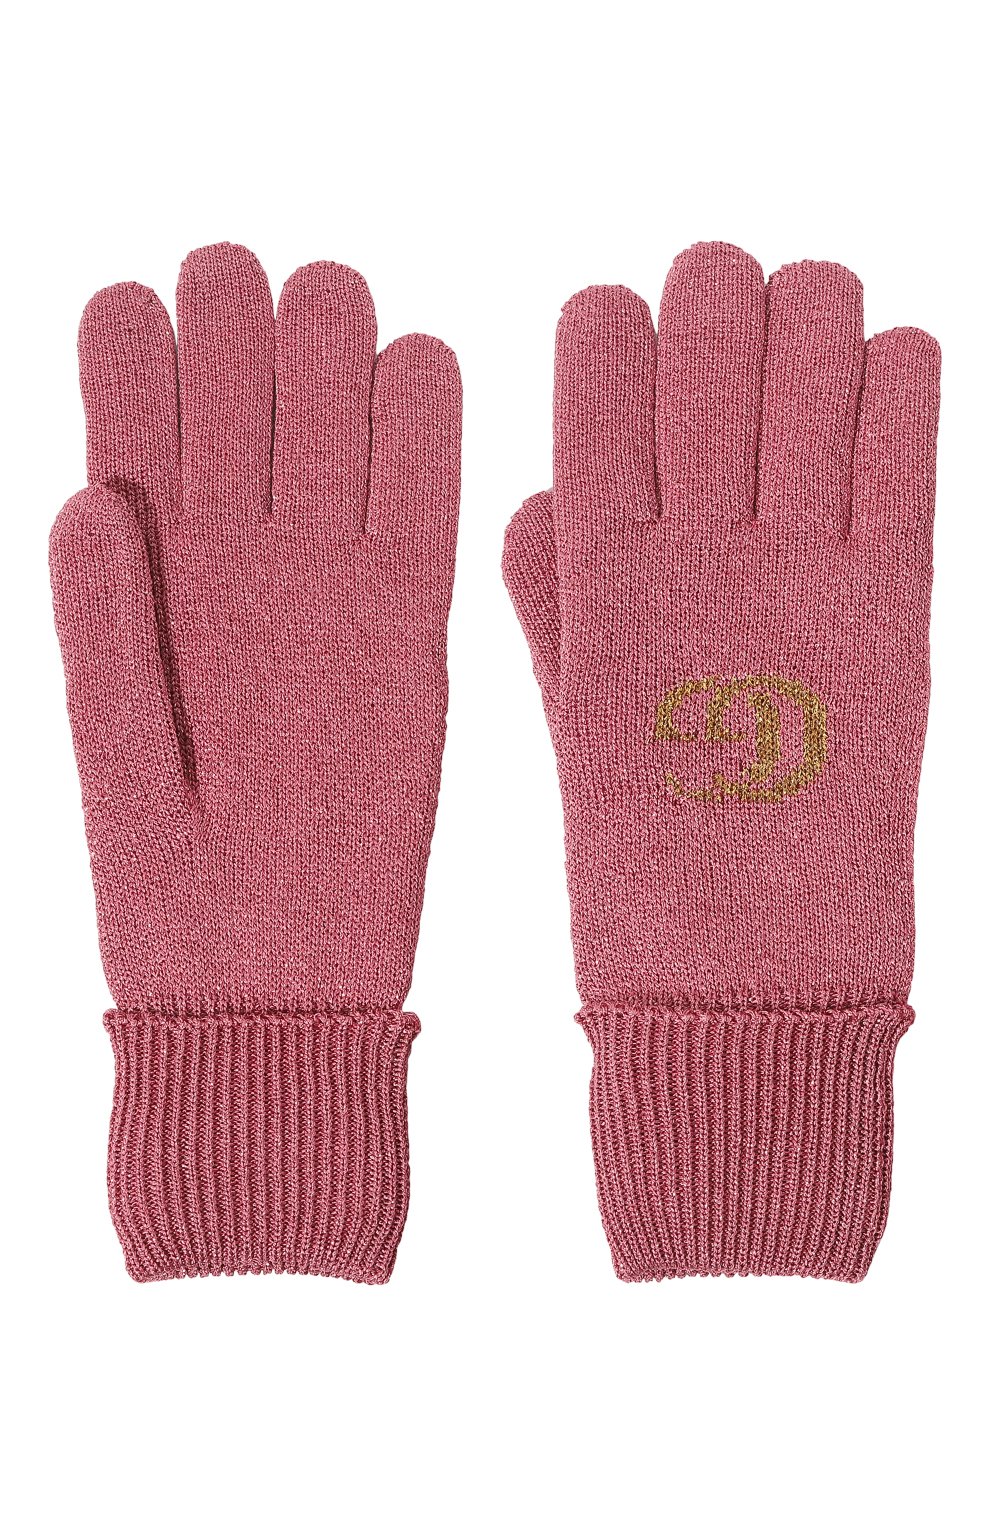 Женские перчатки из вискозы GUCCI розового цвета, арт. 677821 3GAEK | Фото 2 (Материал: Текстиль, Вискоза)